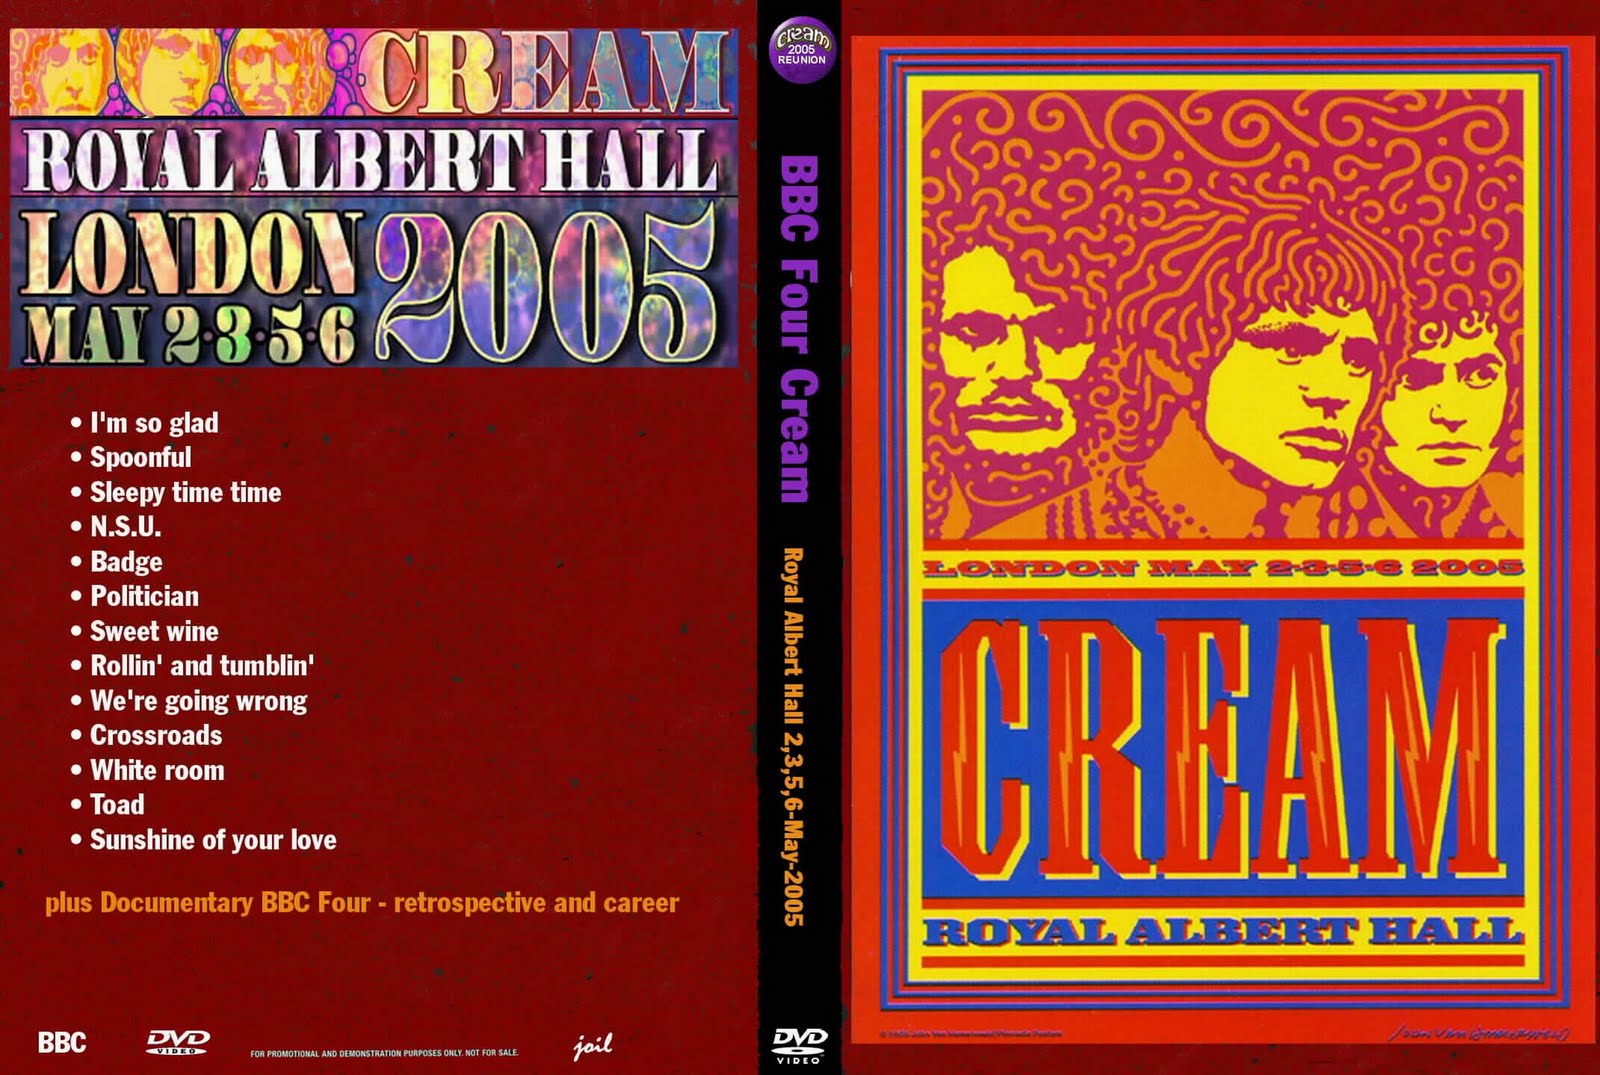 http://4.bp.blogspot.com/_se0zHB8H7oU/S_MP5hDUL6I/AAAAAAAACeo/Kt2kxaXN08E/s1600/Cream+-+BBC+Four+Cream+(Royal+Albert+Hall+2005)+-+Cover.jpg